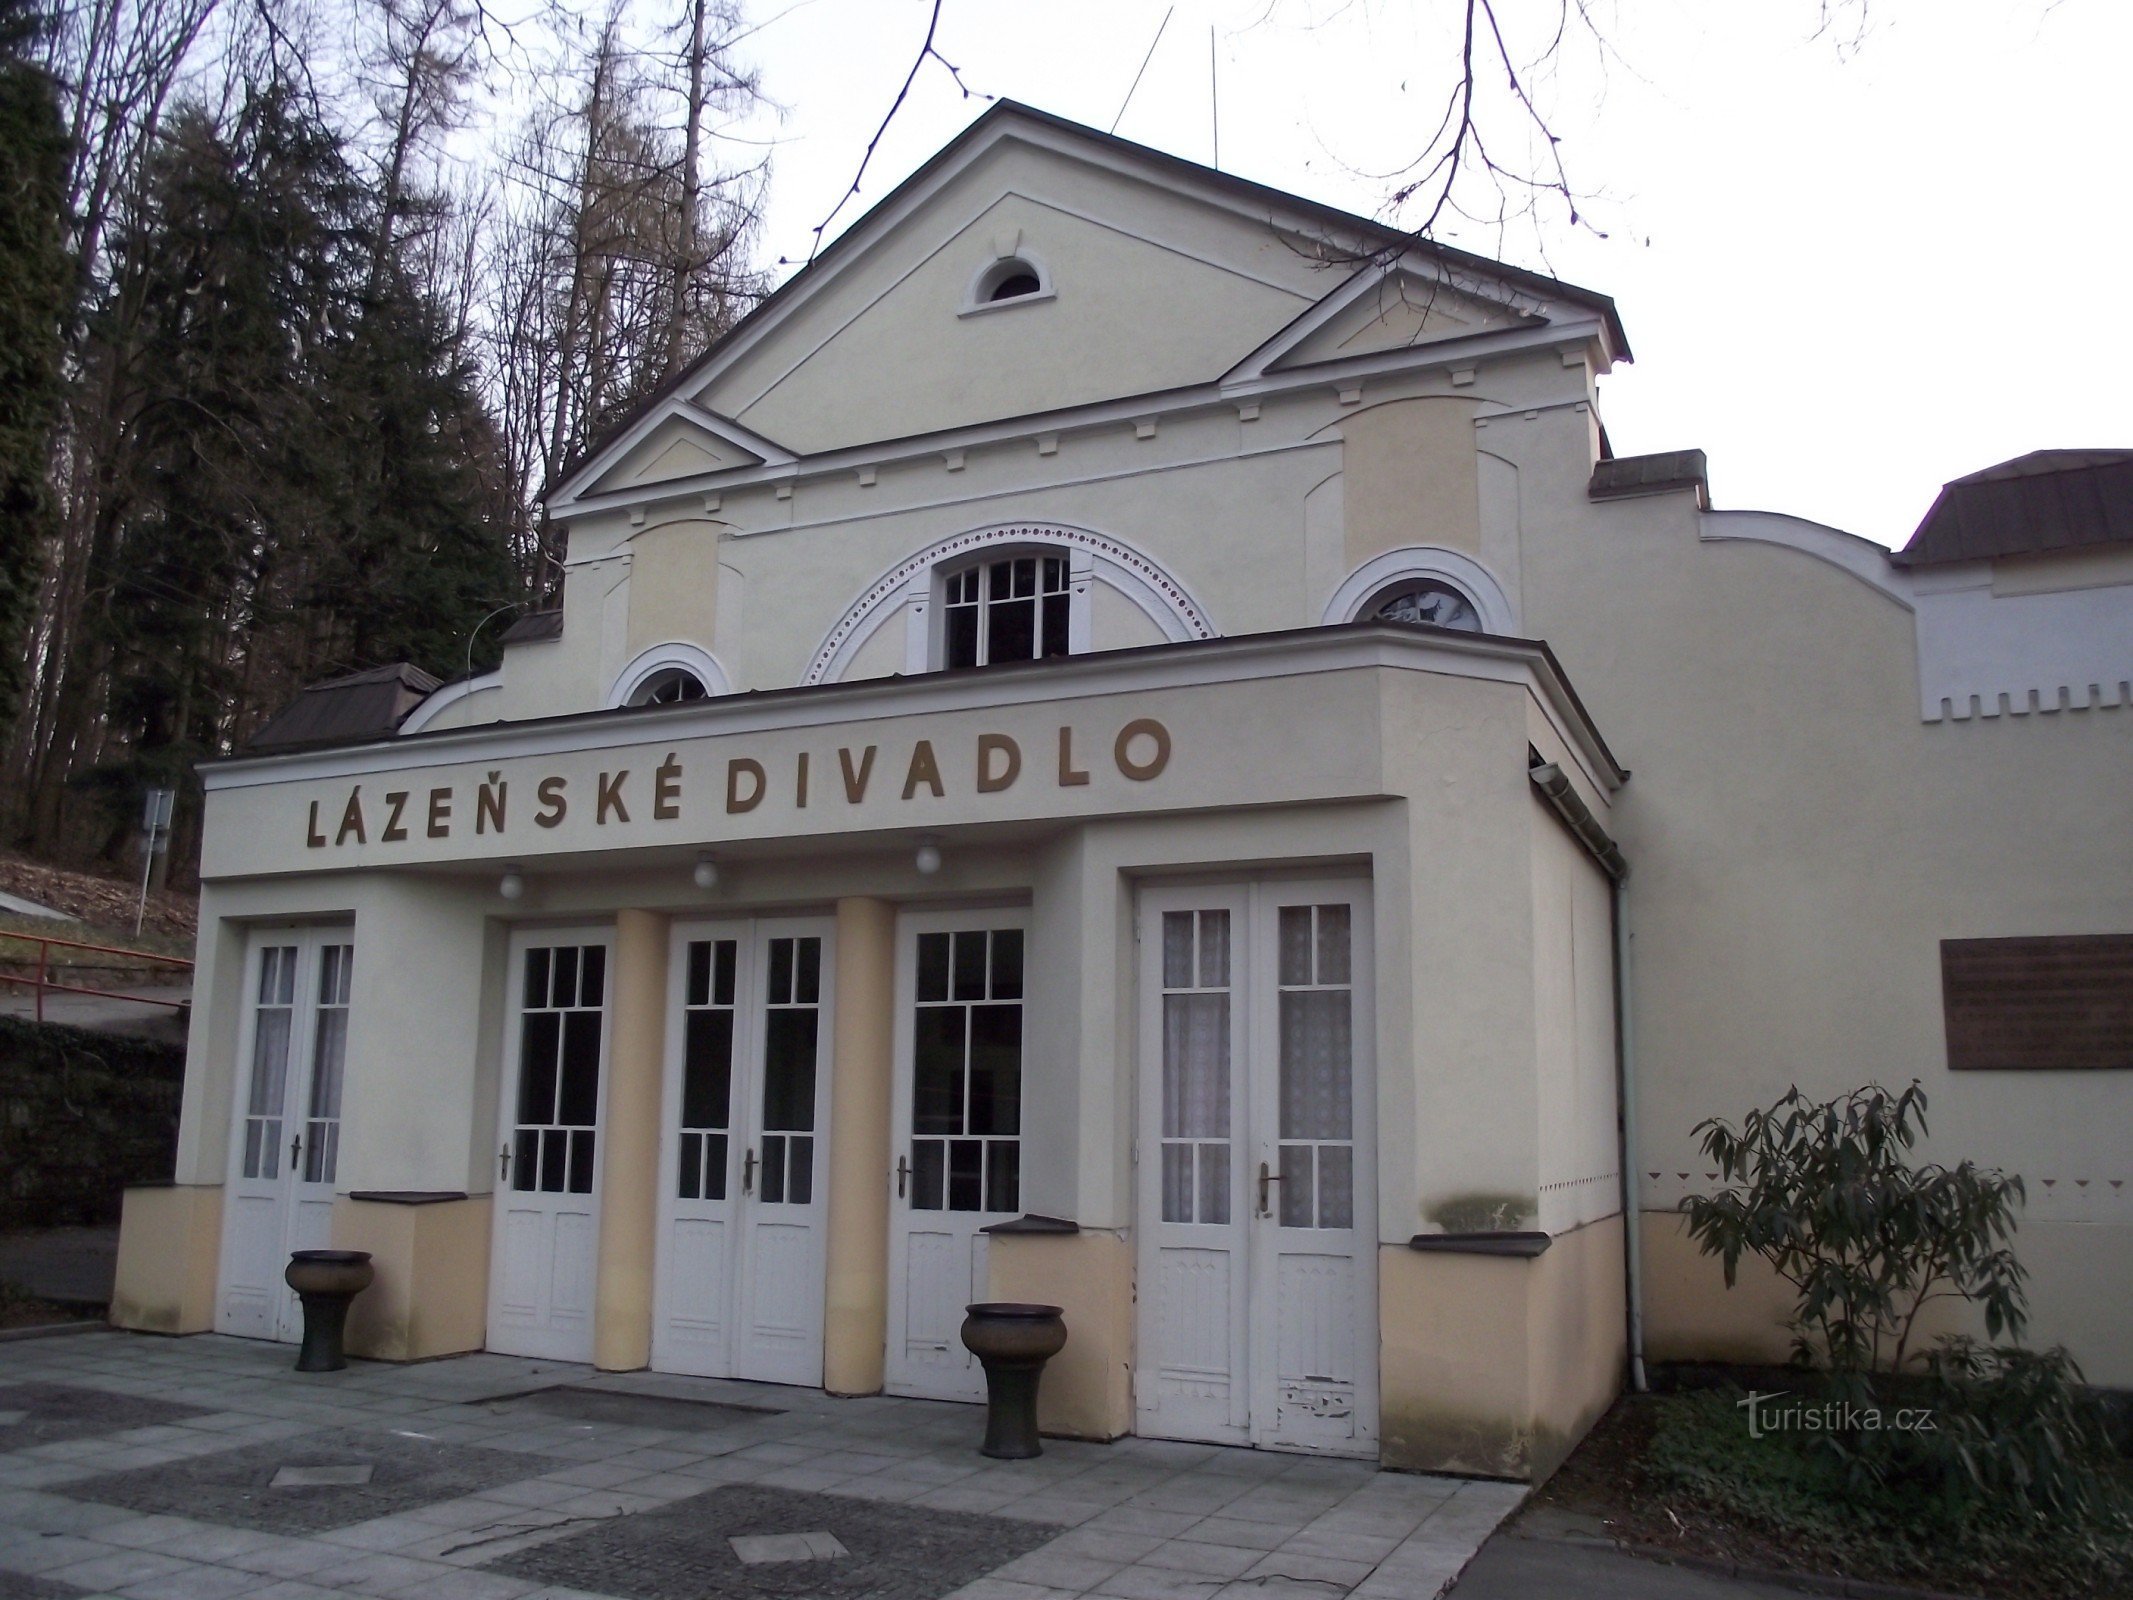 Luhačovice – Teatro termale